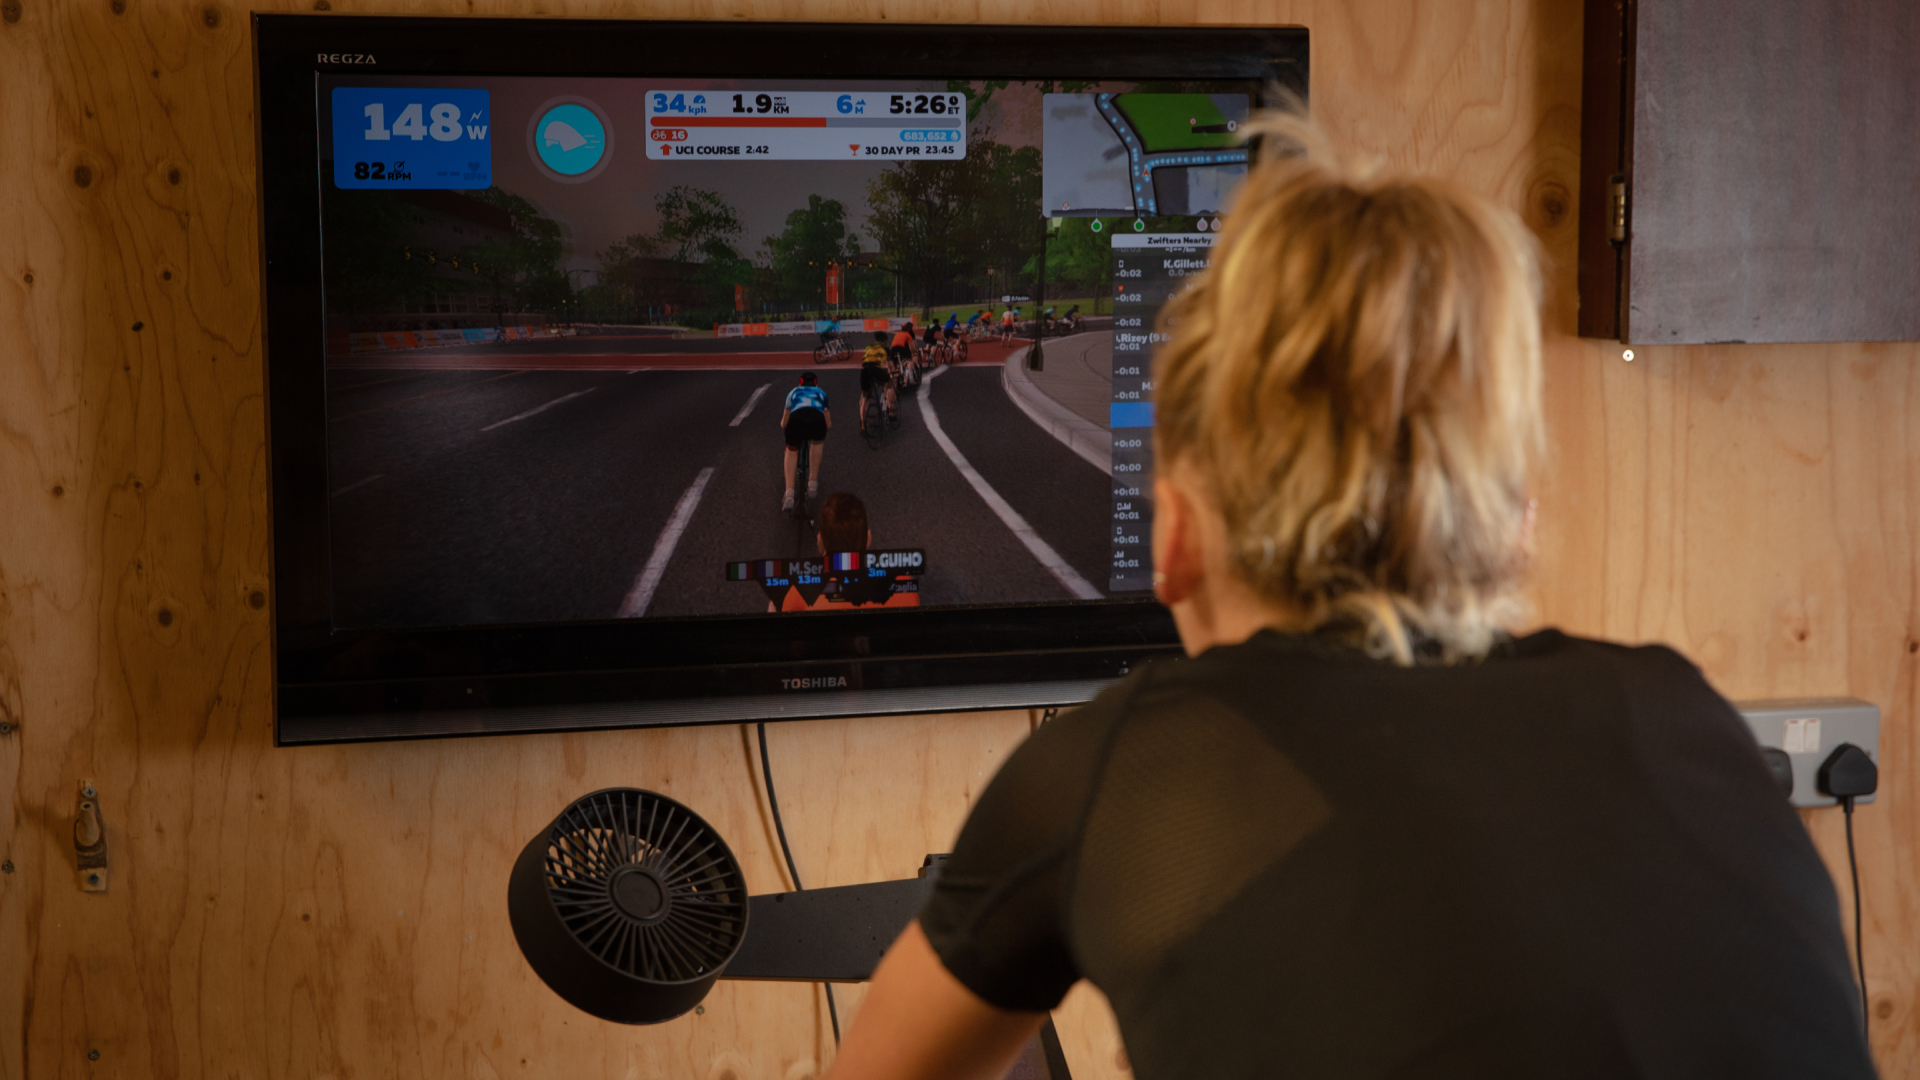 Zycle smart Zbike: lo mejor del ciclismo virtual y del ci